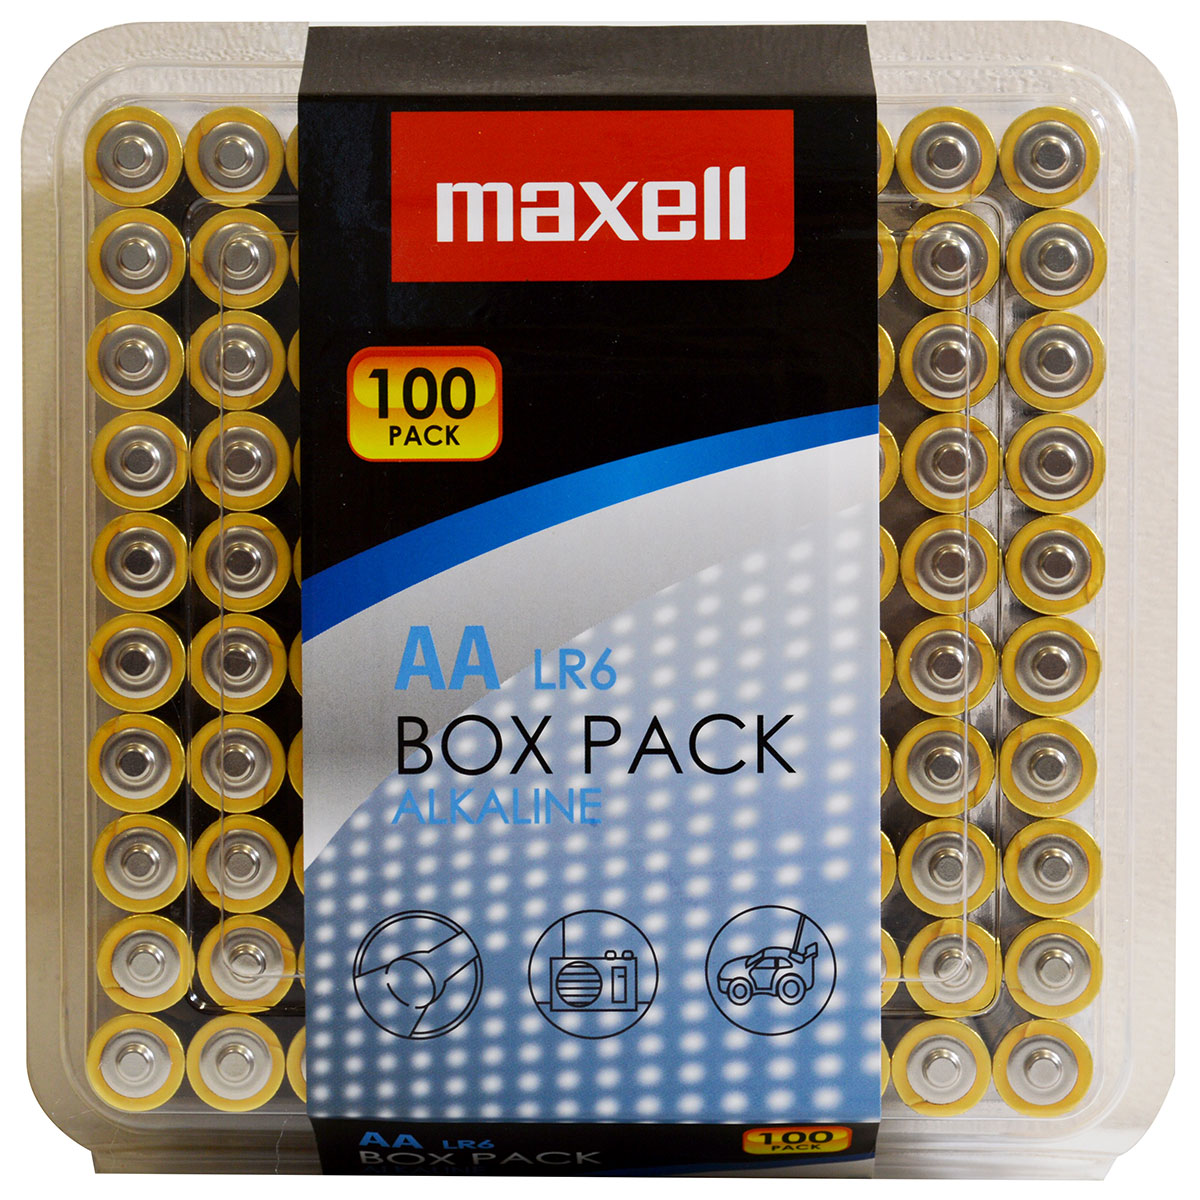 Maxell Alkaline LR6 AA Mignon 1,5 V Batterie, 100 Stk. im Box Pack